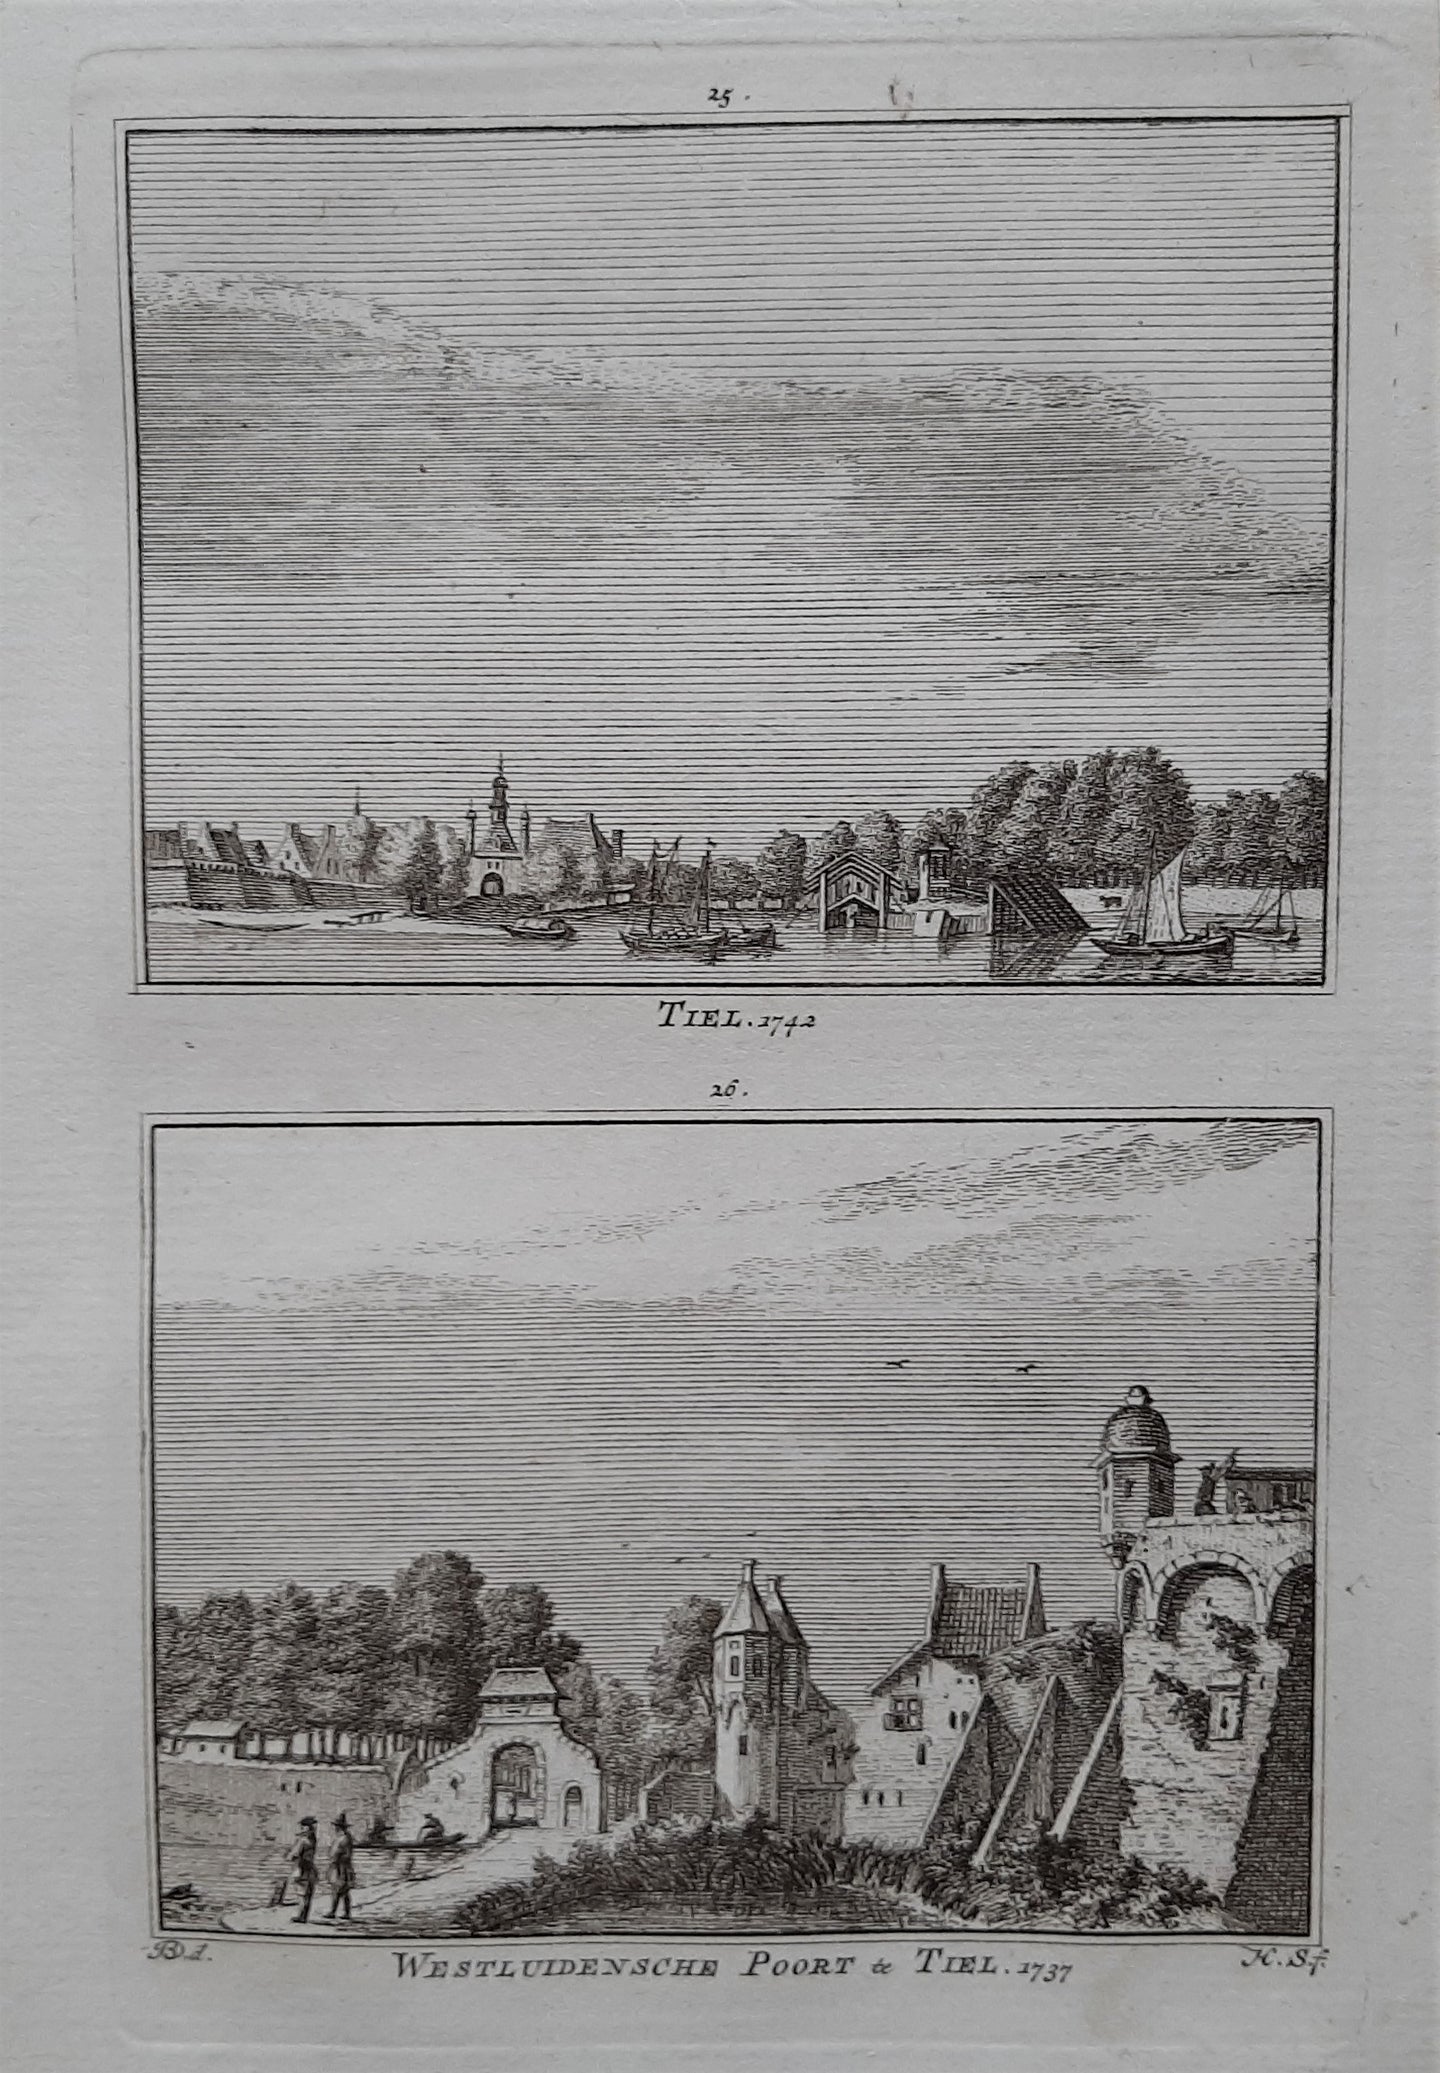 Tiel De stad Tiel en de Westluidensche poort - H Spilman - ca. 1750